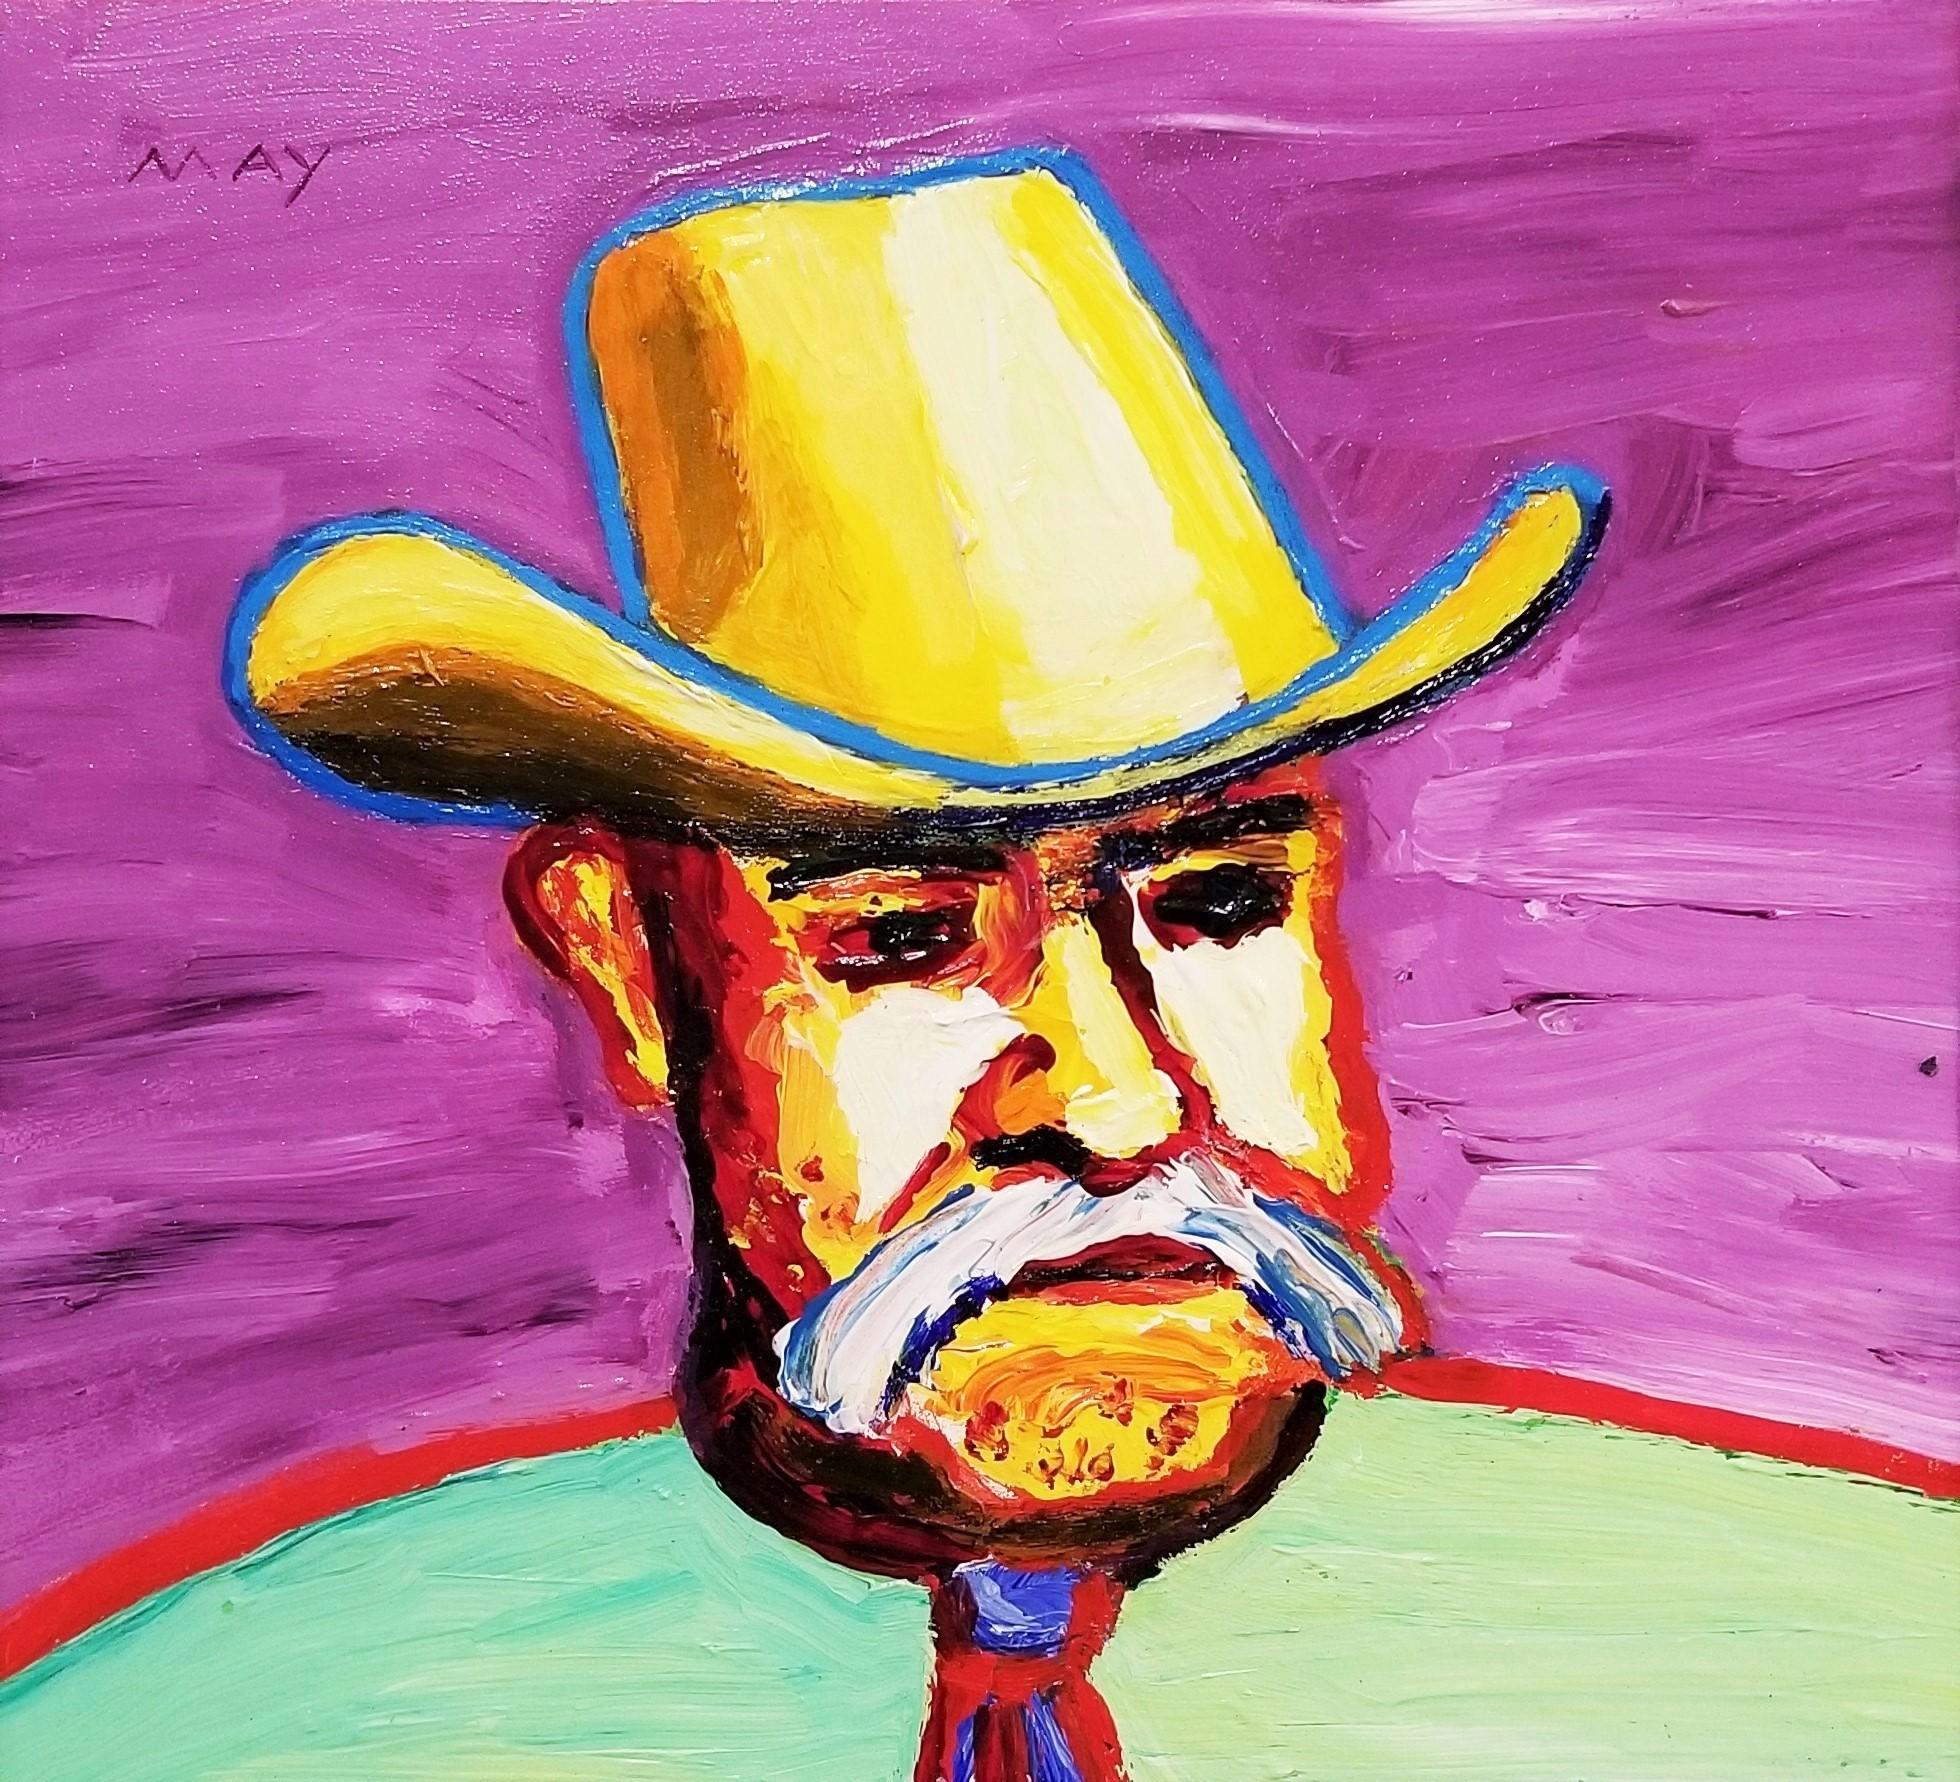 Artiste : Dan May (Américain, 1955-)
Titre : "Cowboy"
*Signé par May en haut à droite
Circa : 2020
Moyen : Peinture acrylique originale sur panneau
Encadrement : Encadré dans une moulure noire contemporaine.
Dimensions du cadre : 14" x 14"
Taille du